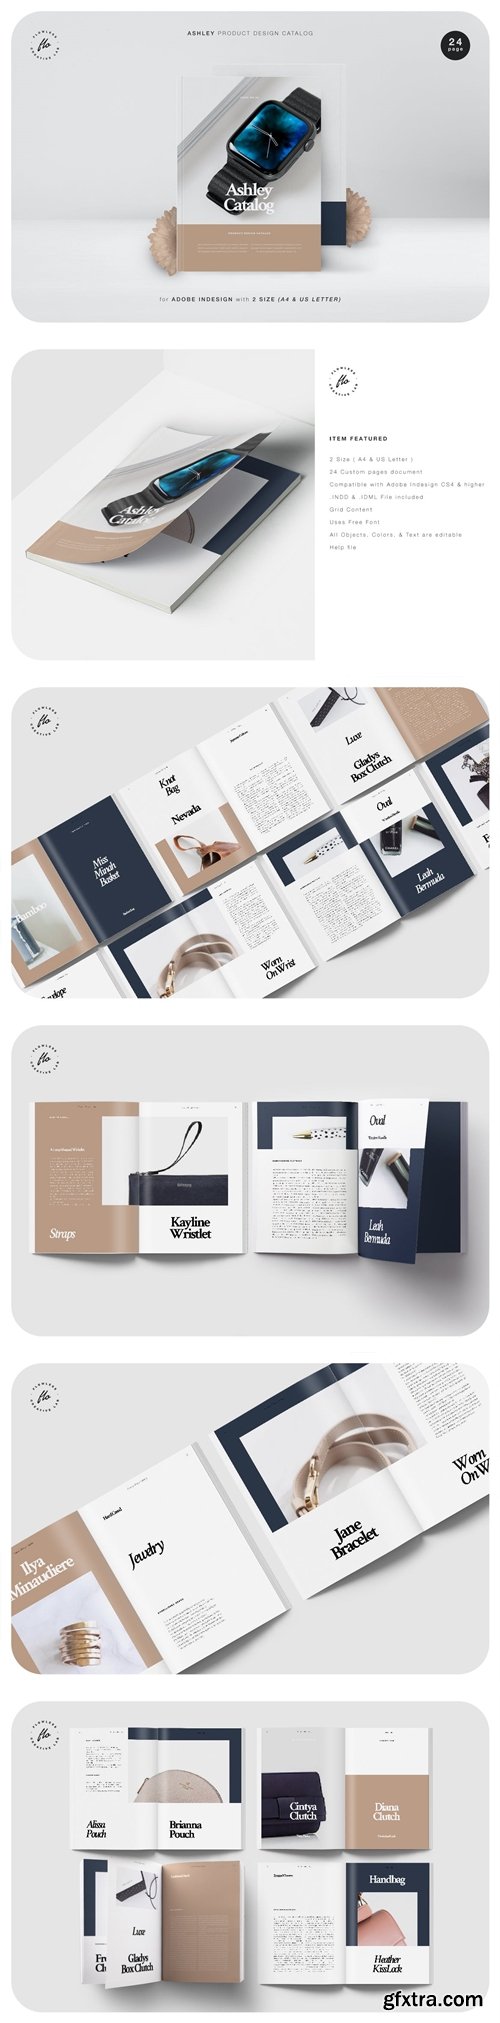 Ashley Product Design Catalog